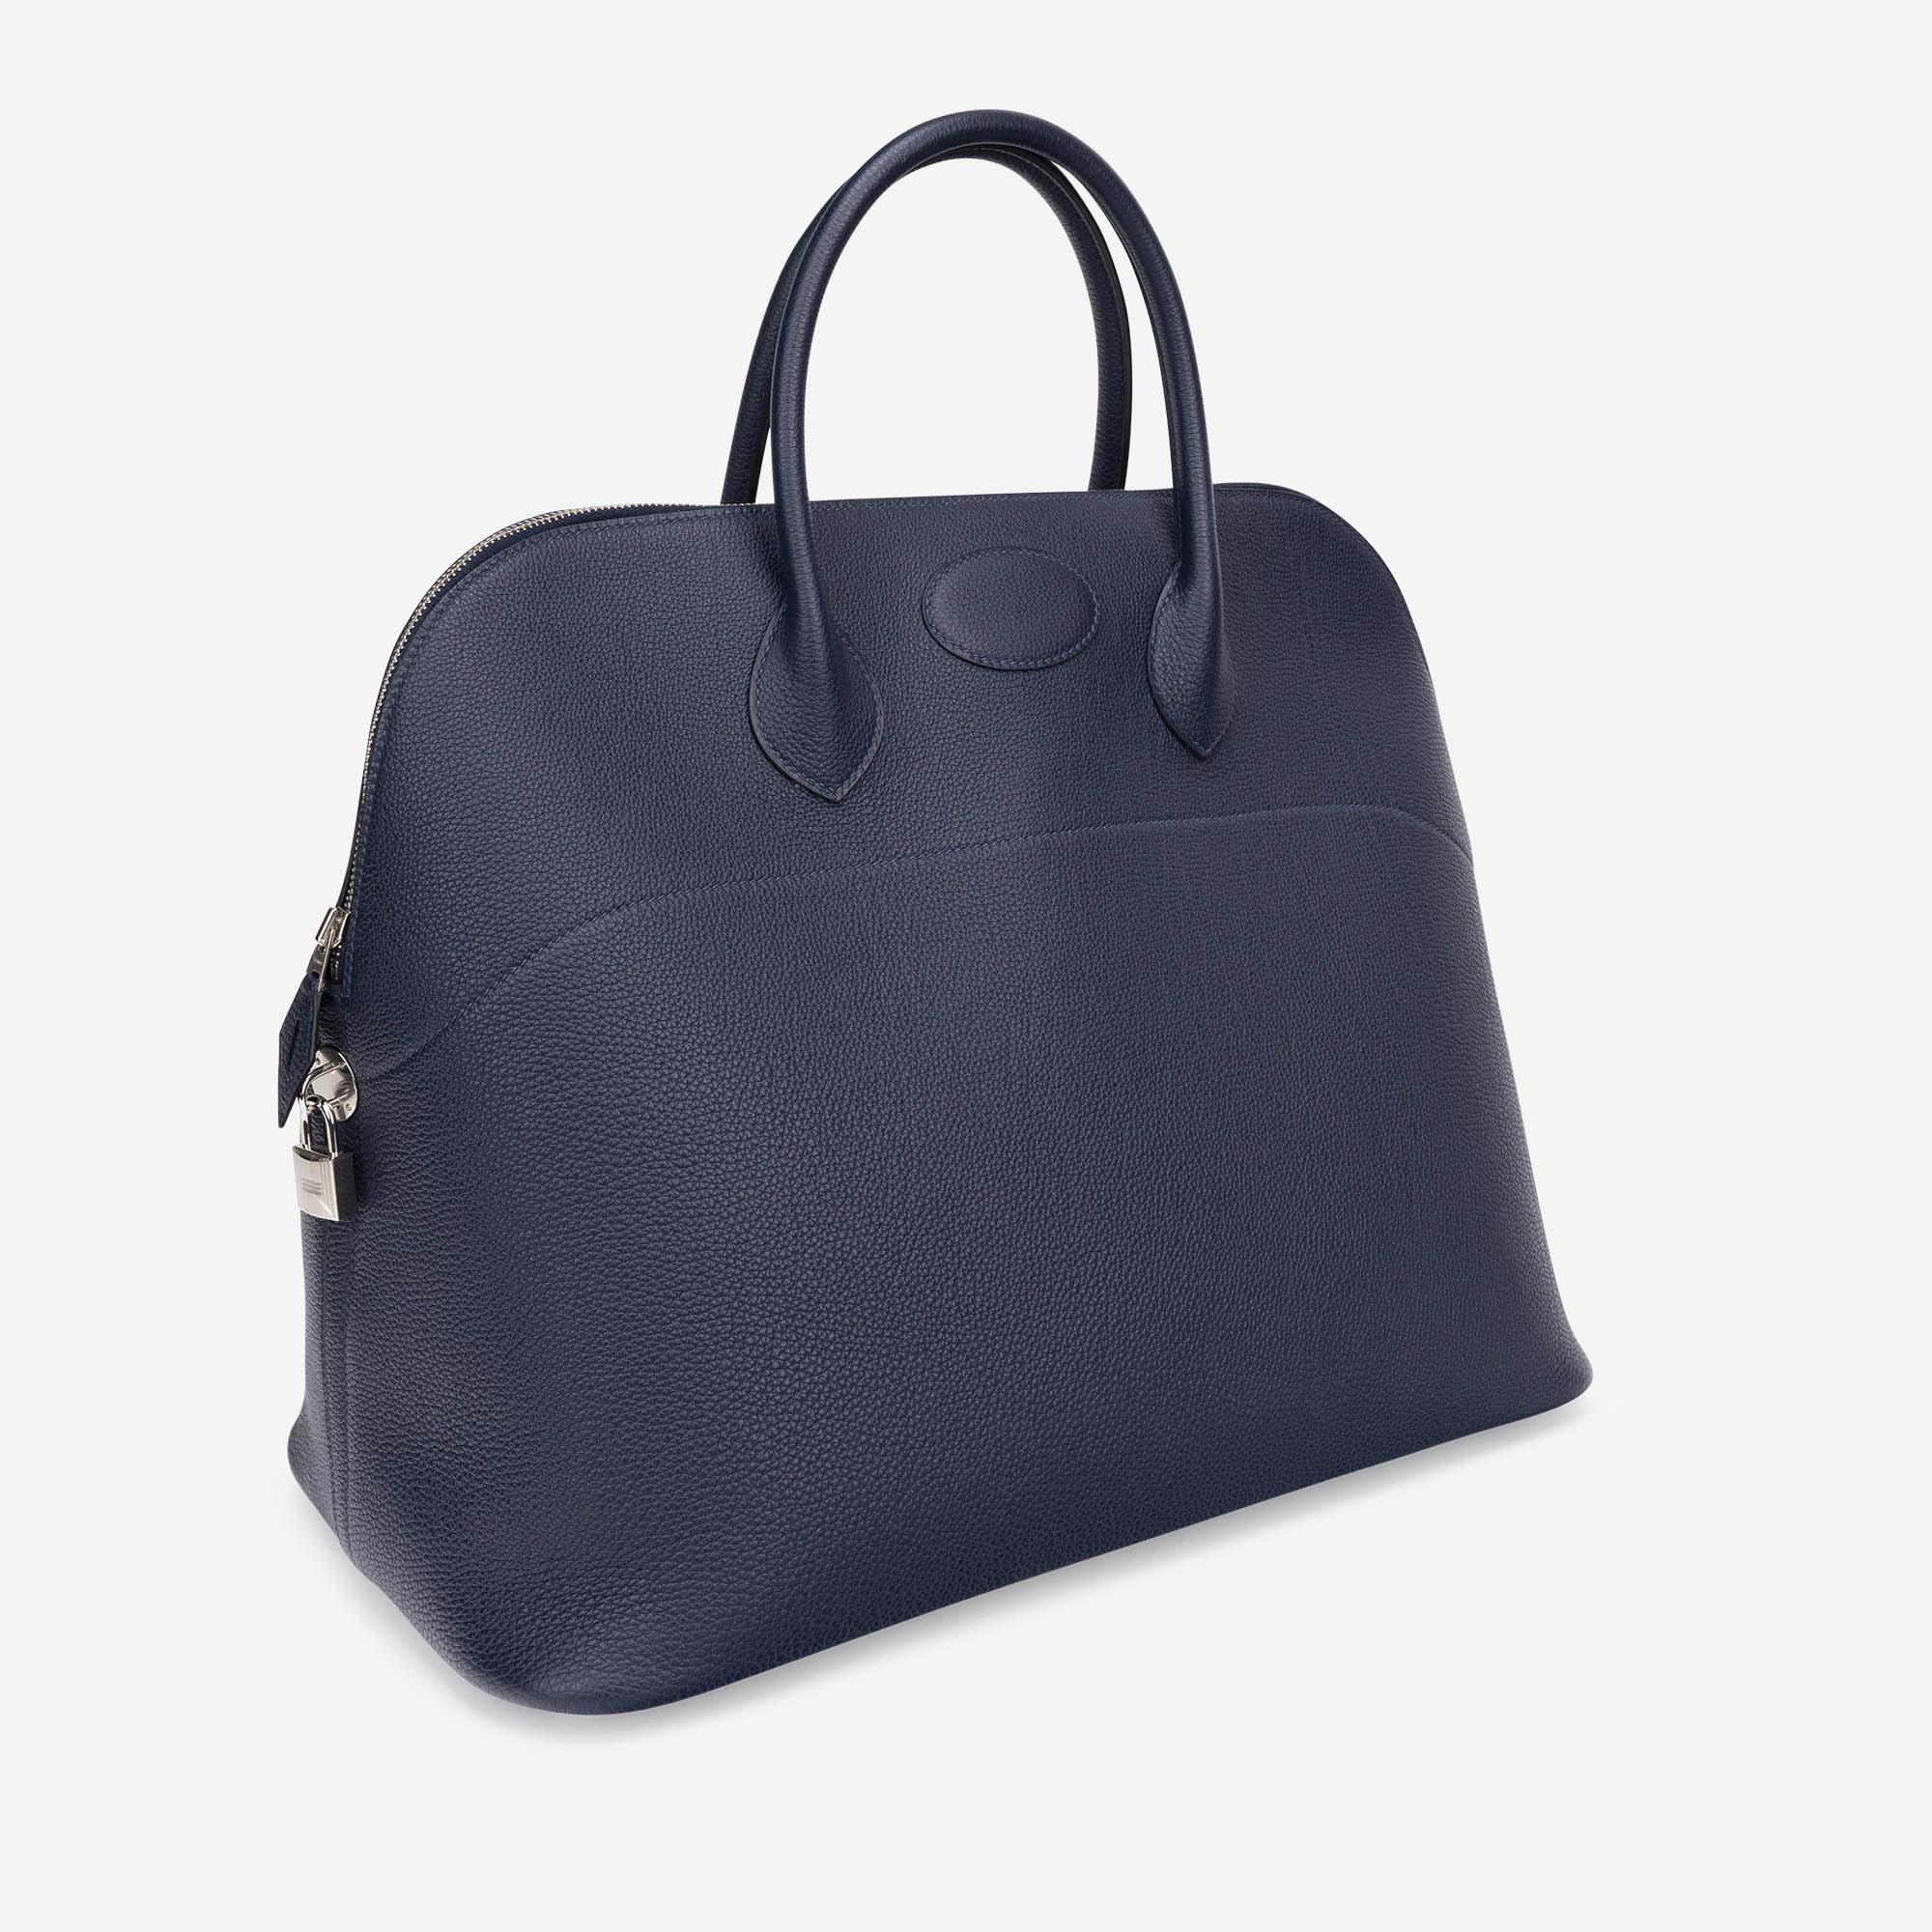 Hermes Bolide 45 Bag Blue de Prusse Togo Weekender New w/Box